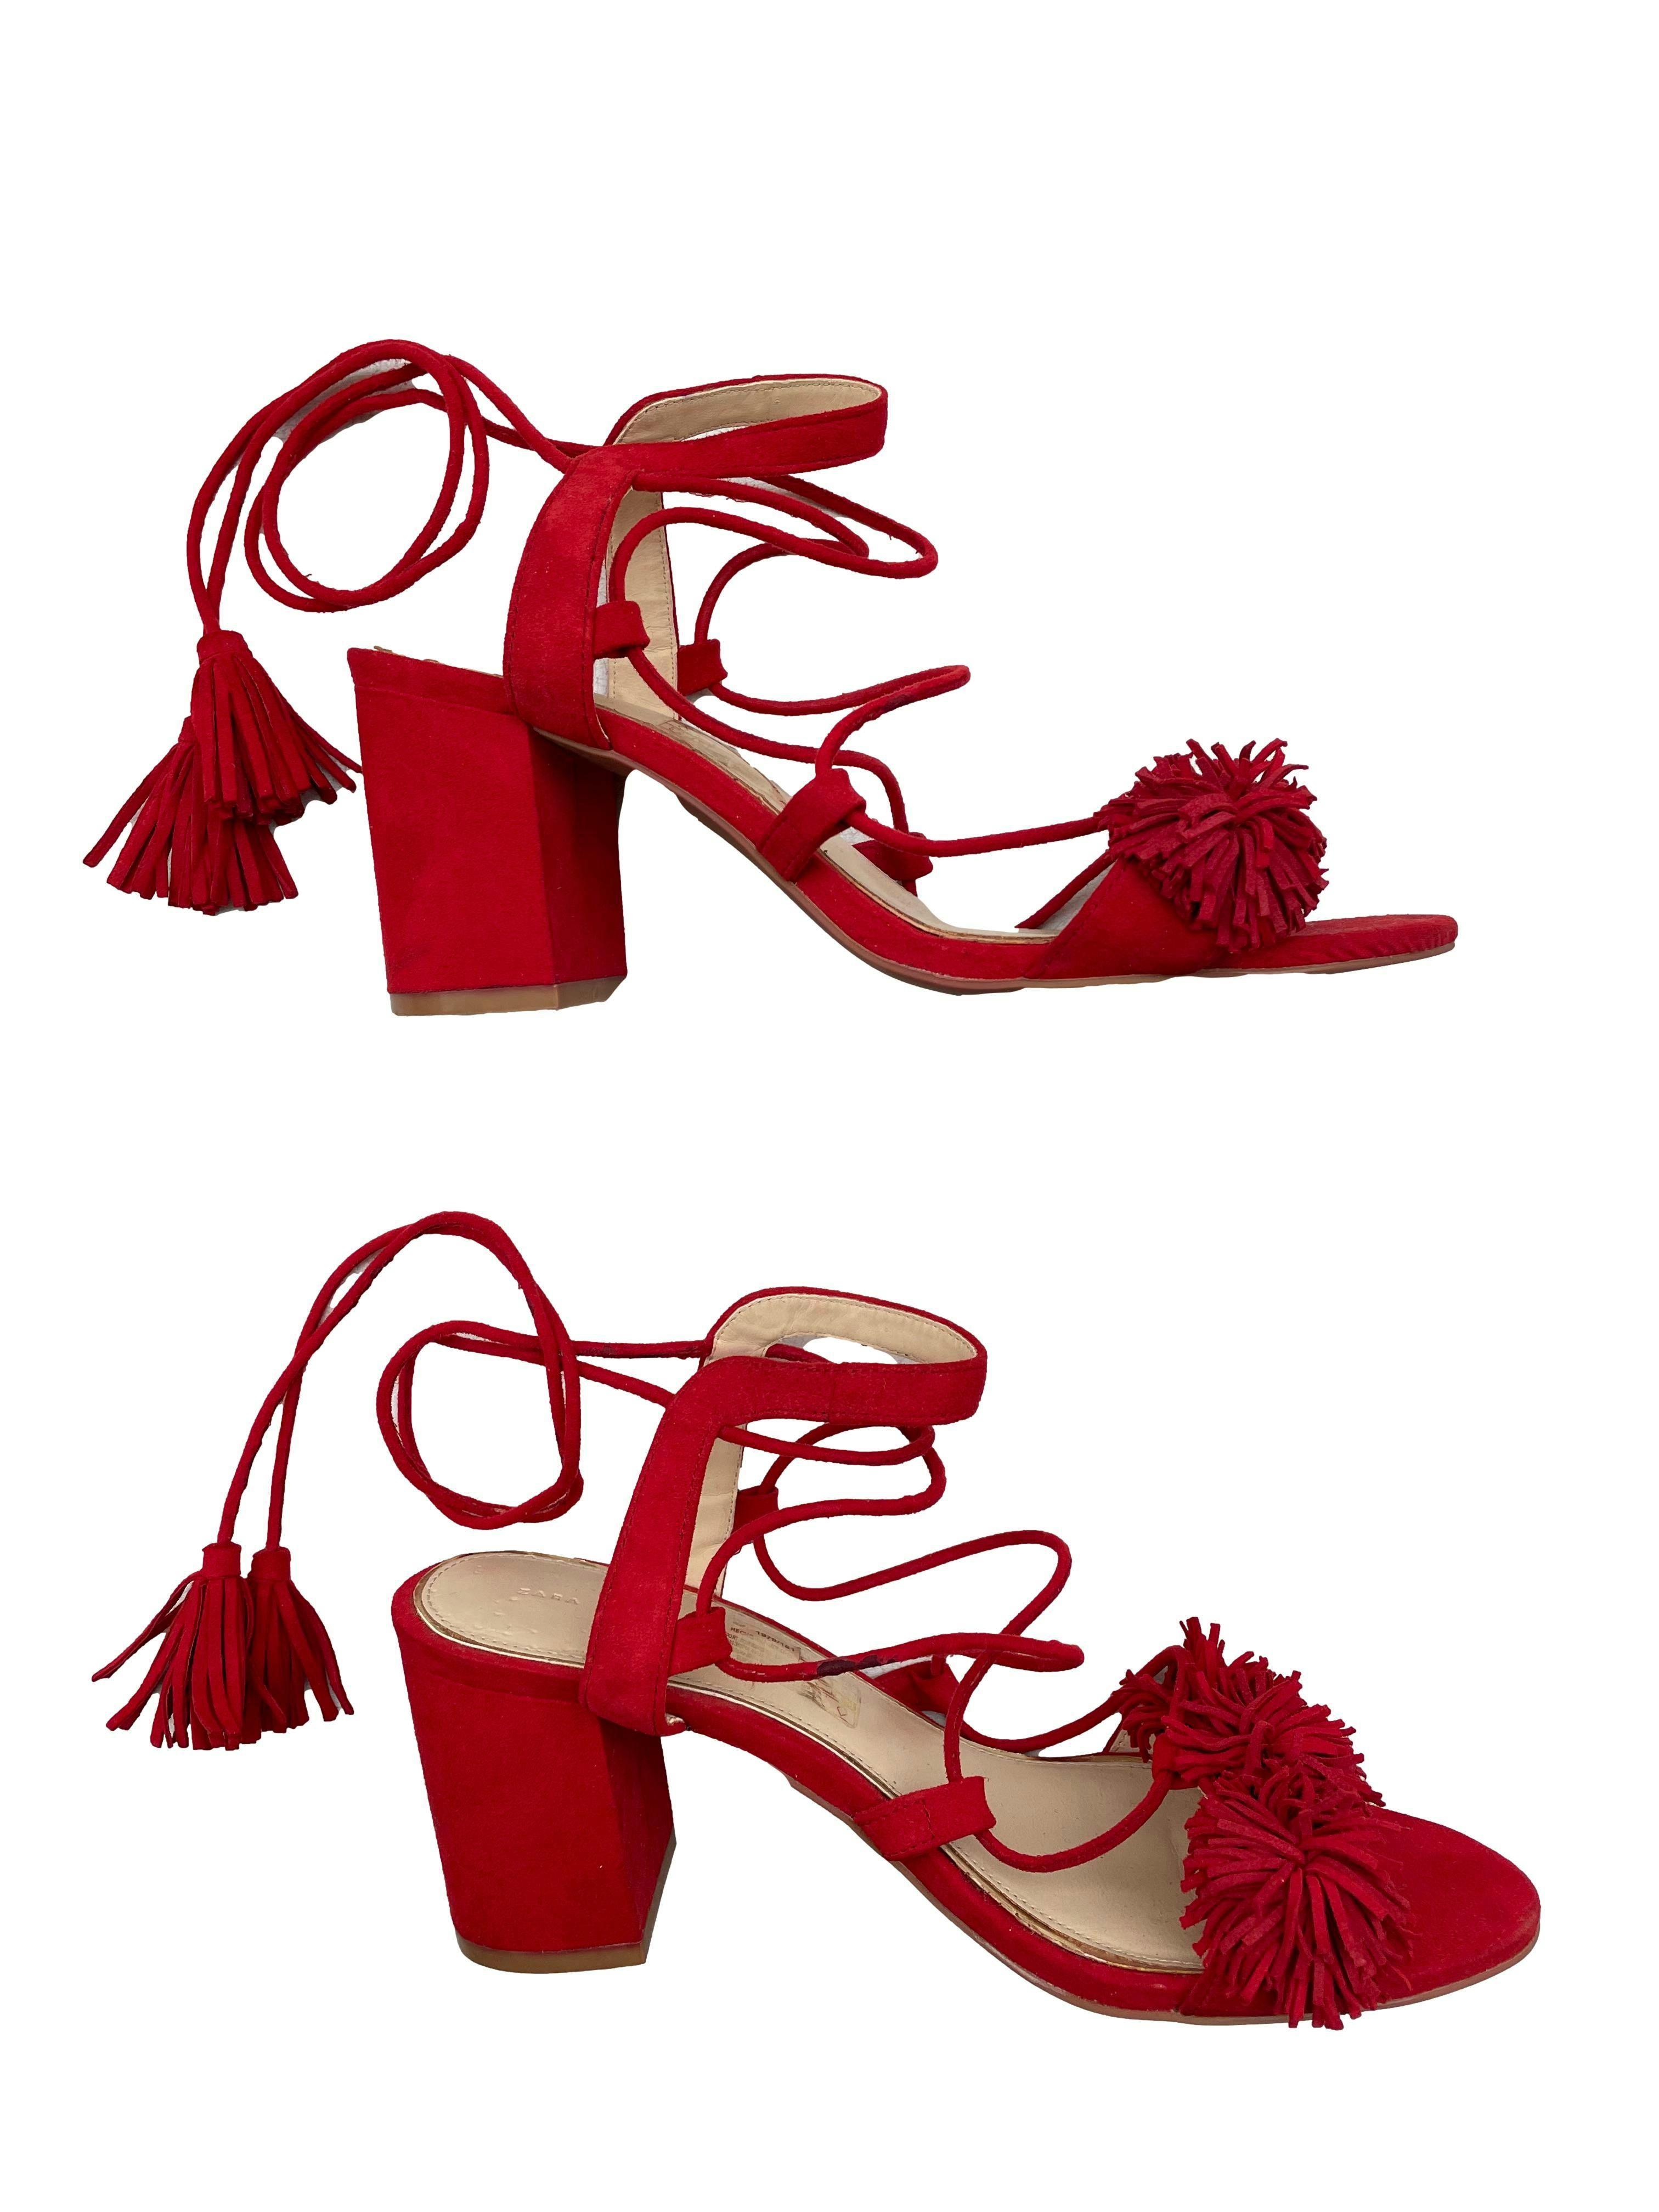 Sandalias rojas Zara de gamuza con cordones y borlas, taco 7cm. Estado 8/10.